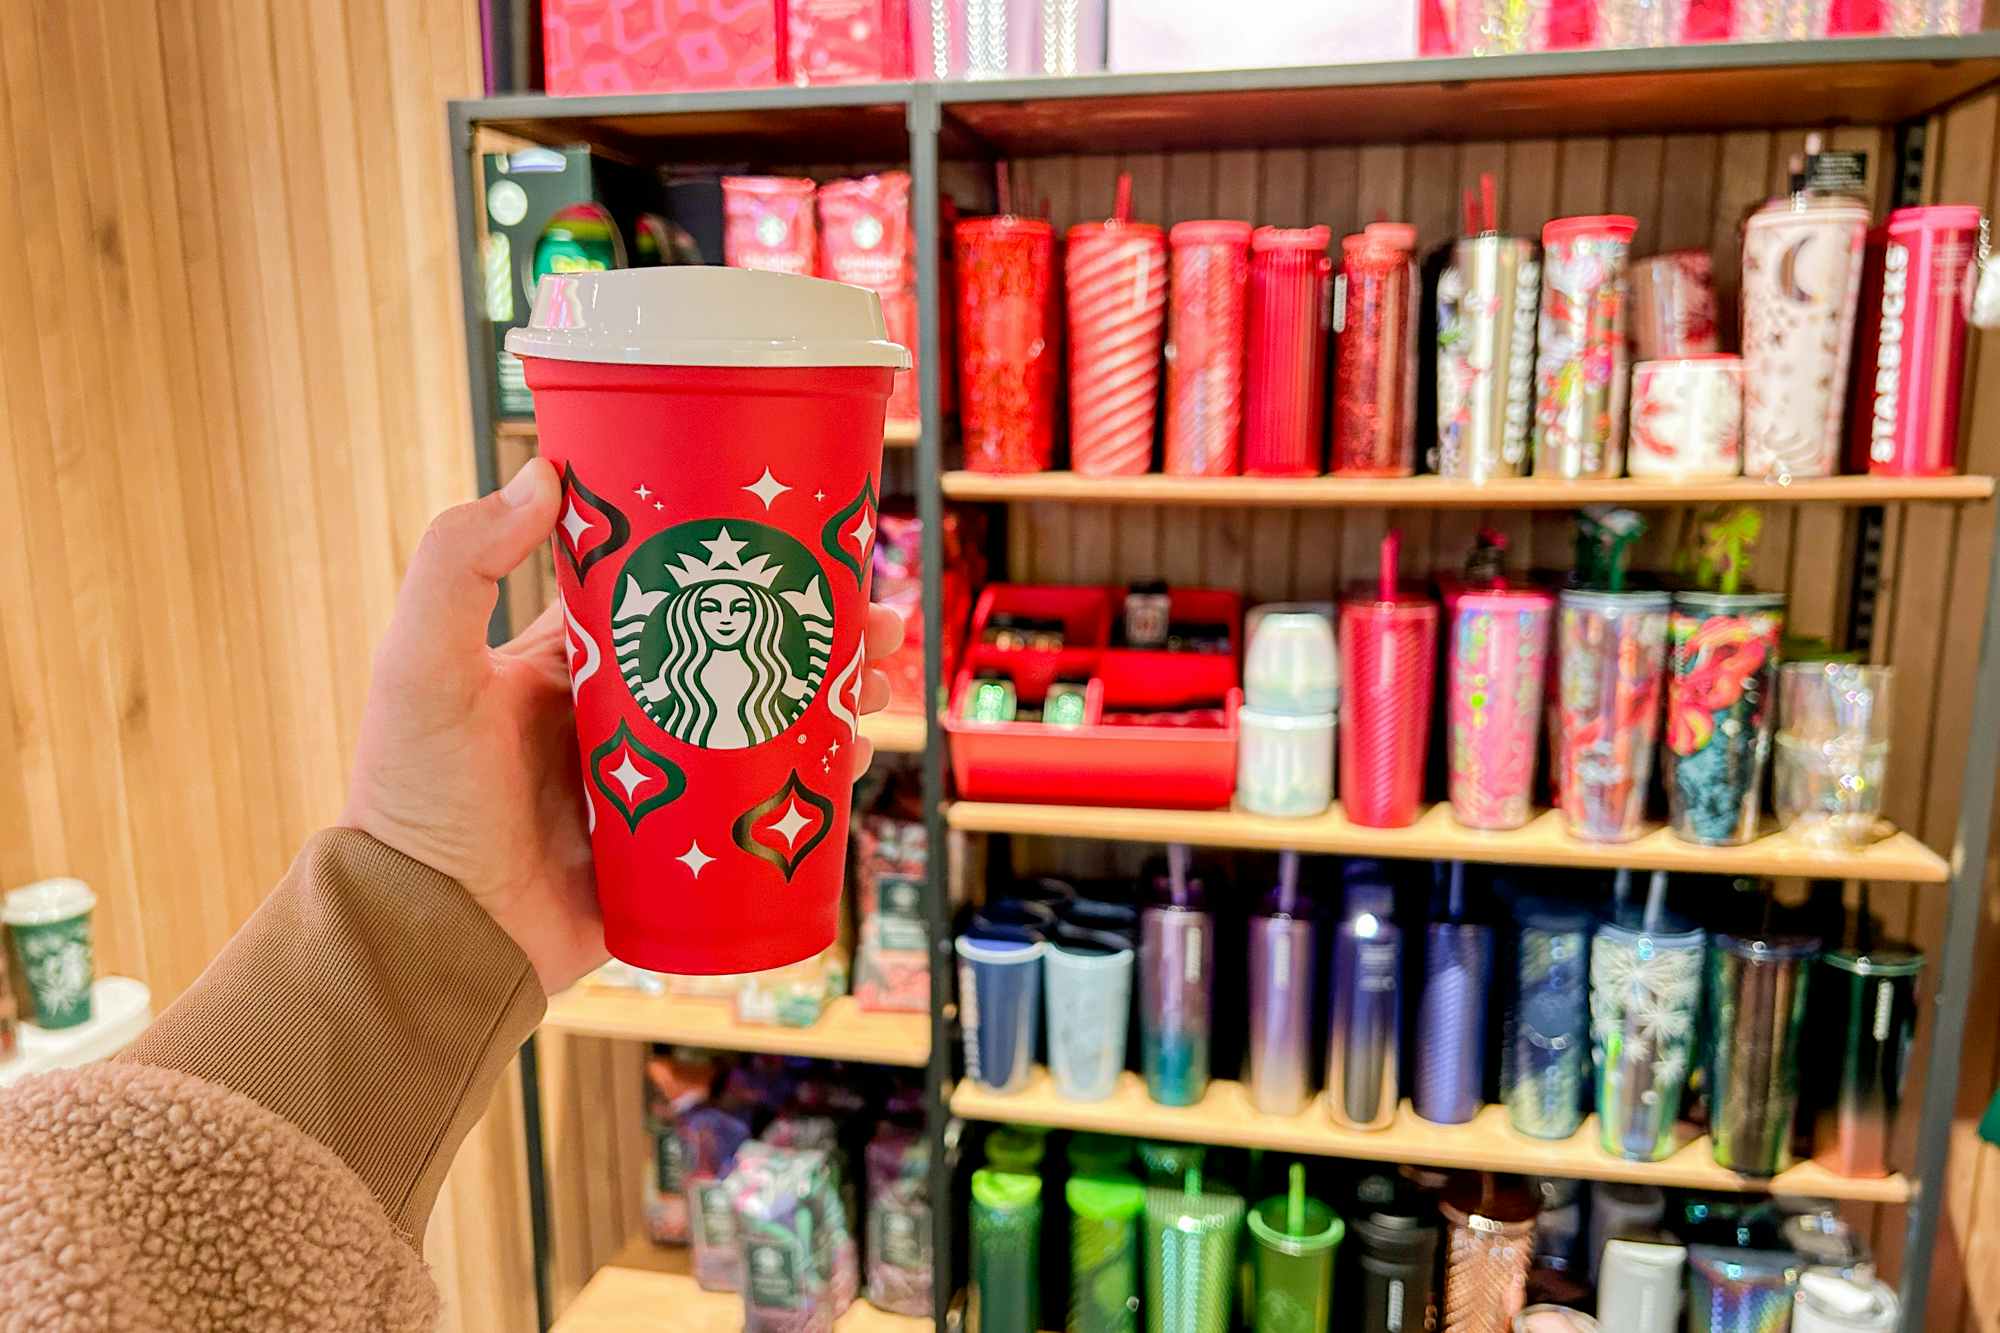 Starbucks' reusable red cup day returns Thursday, November 16